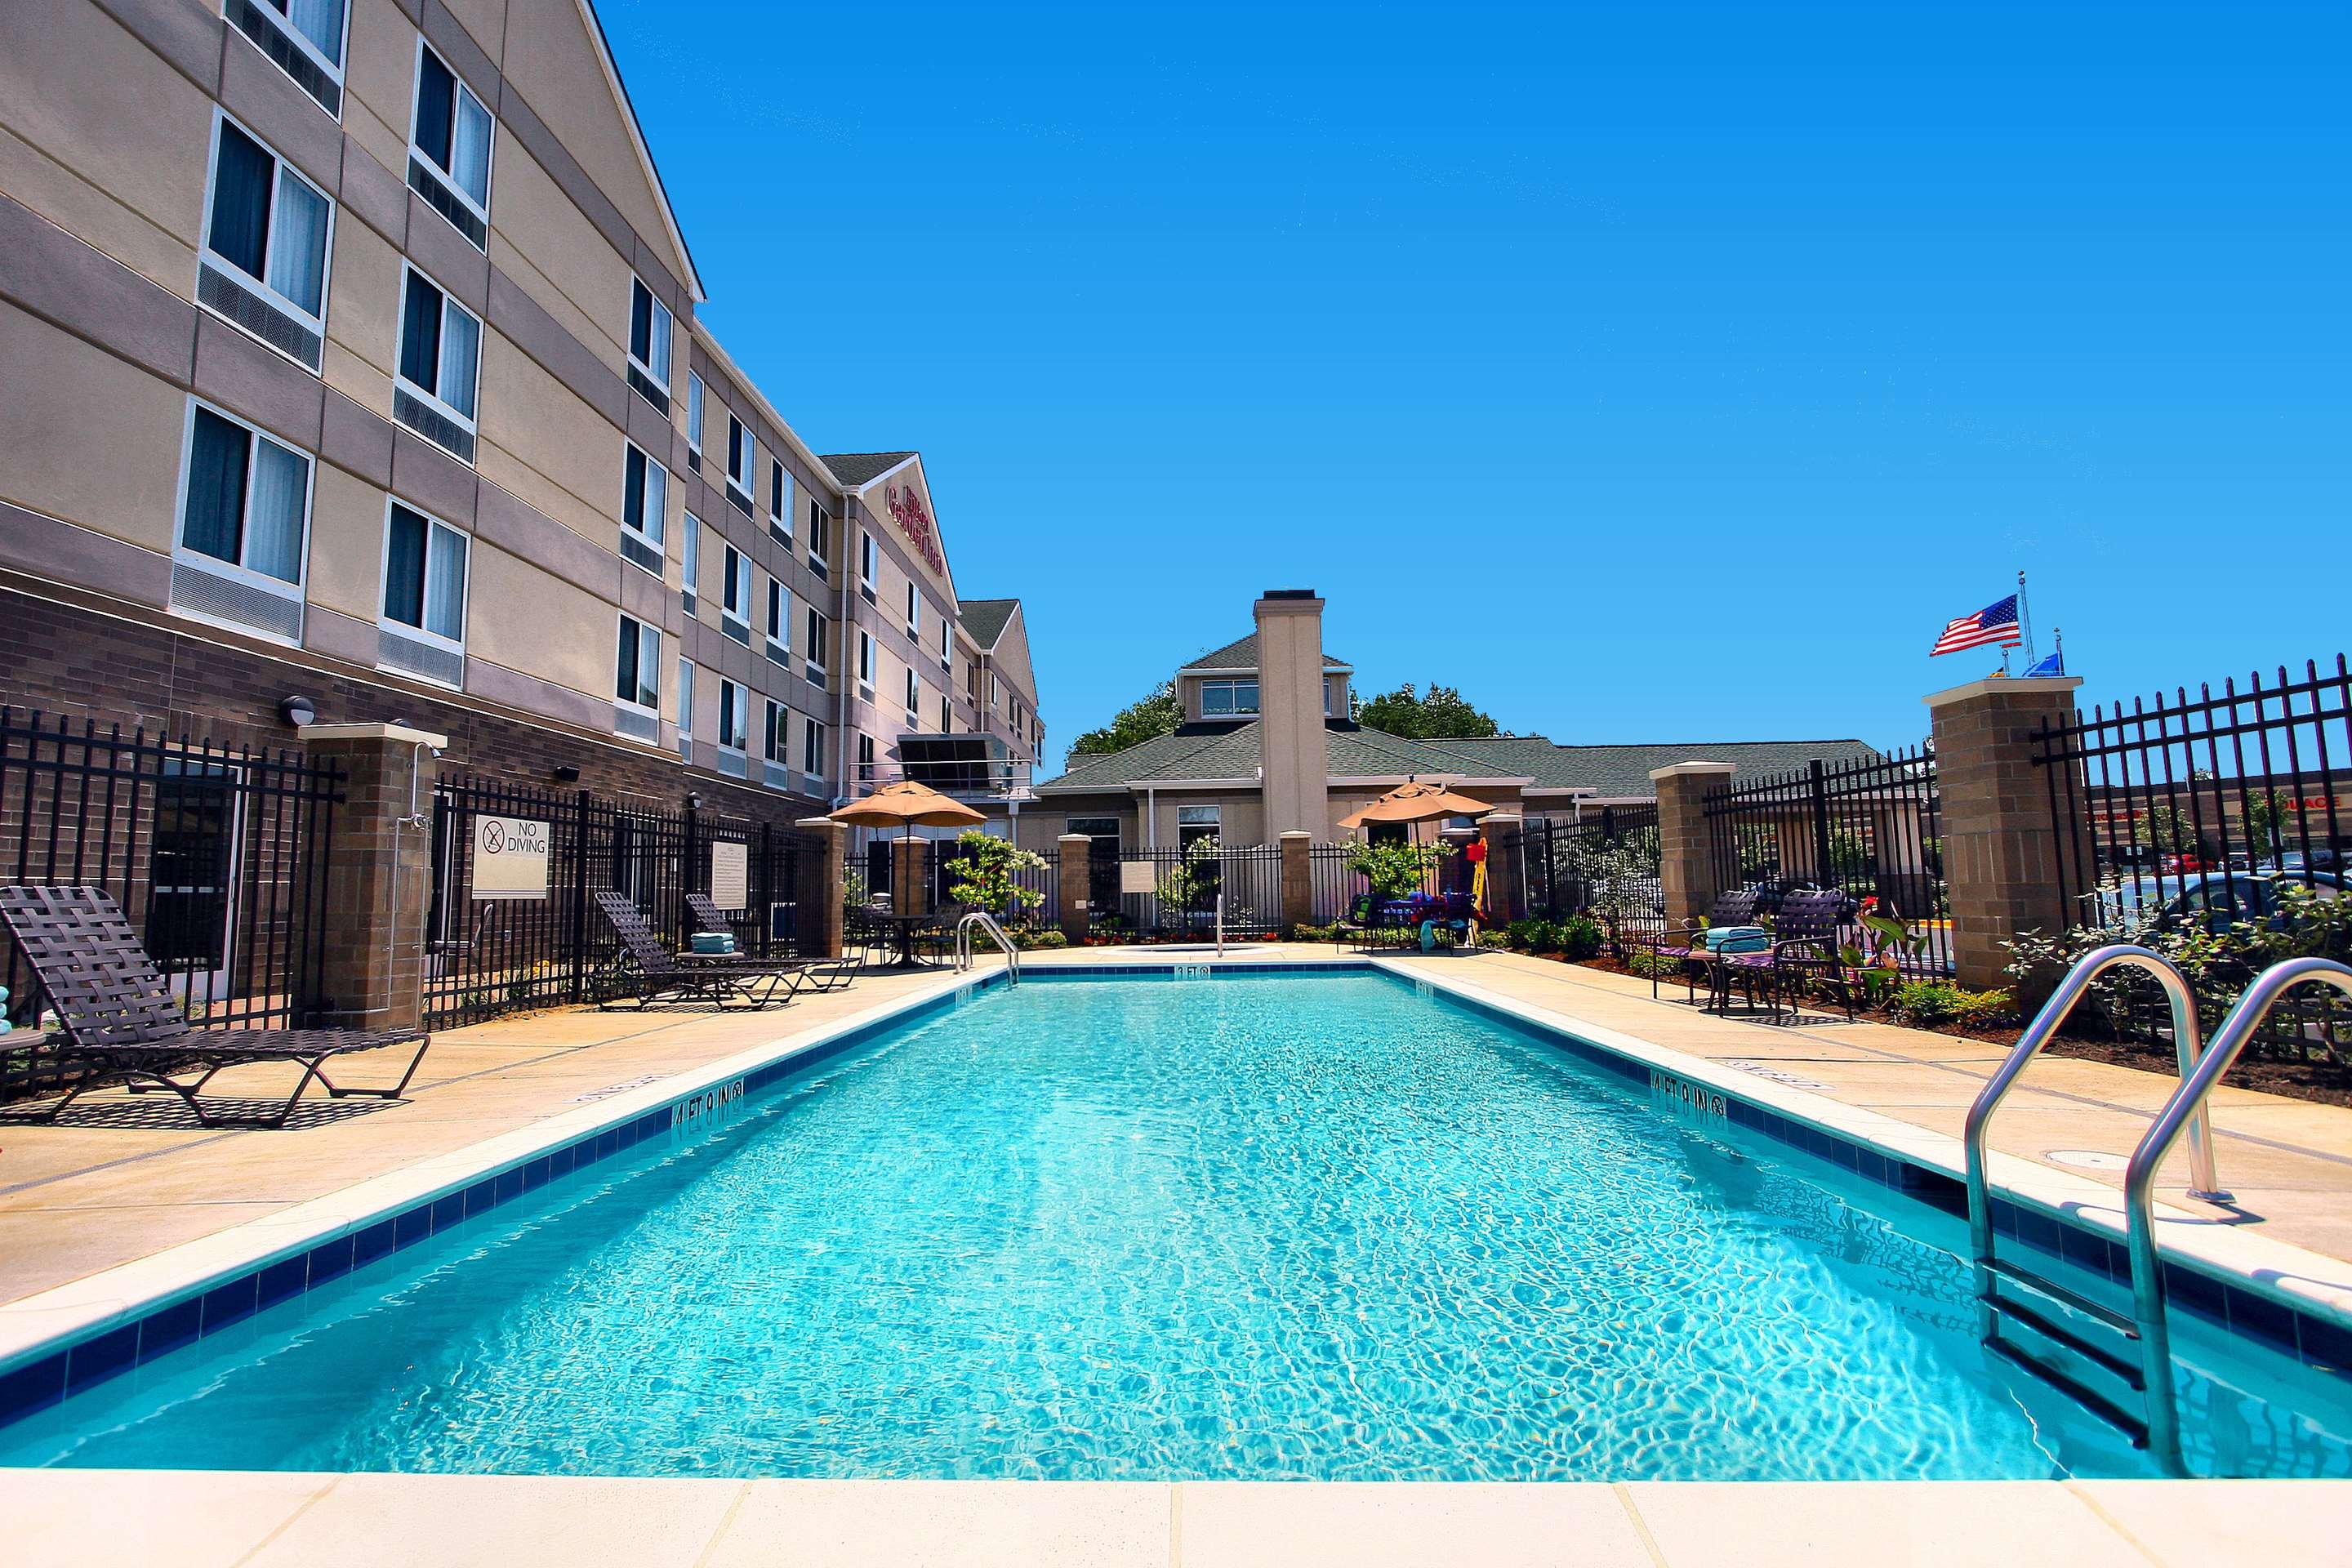 Pool view of Hilton Garden Inn Annapolis